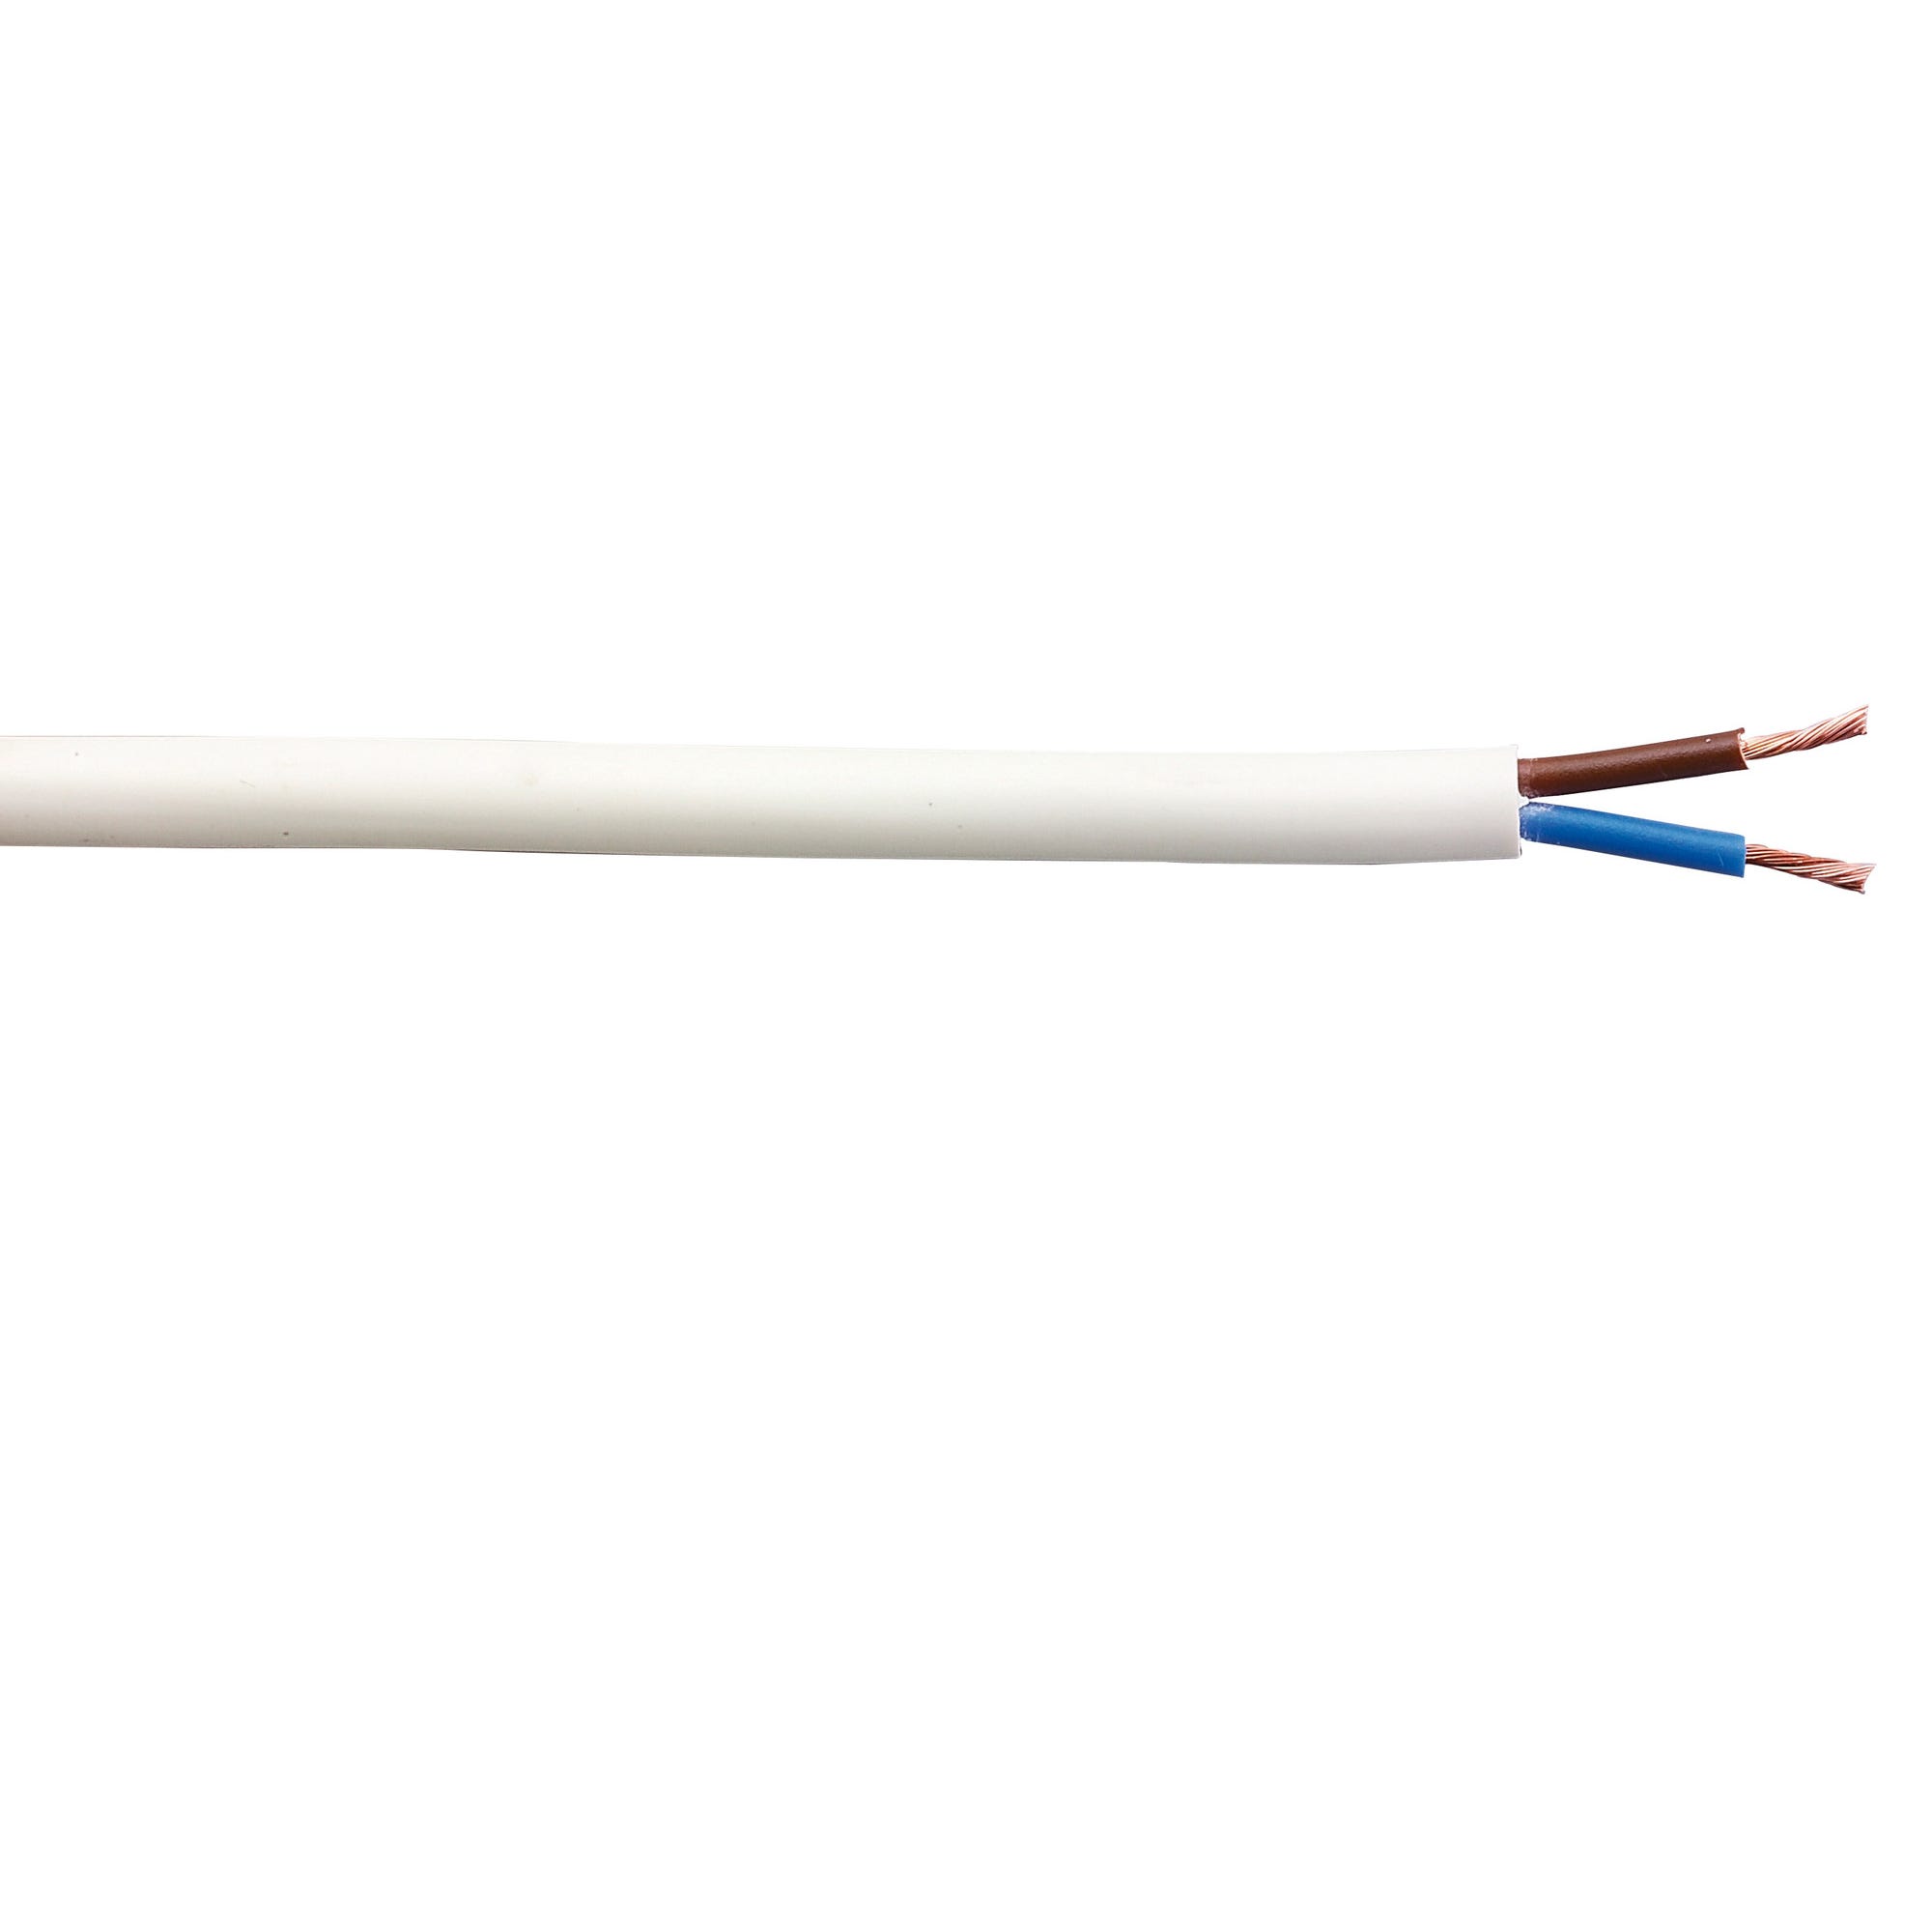 Cable électrique HO5VVF 2x1,5 mm² blanc 5 m 1